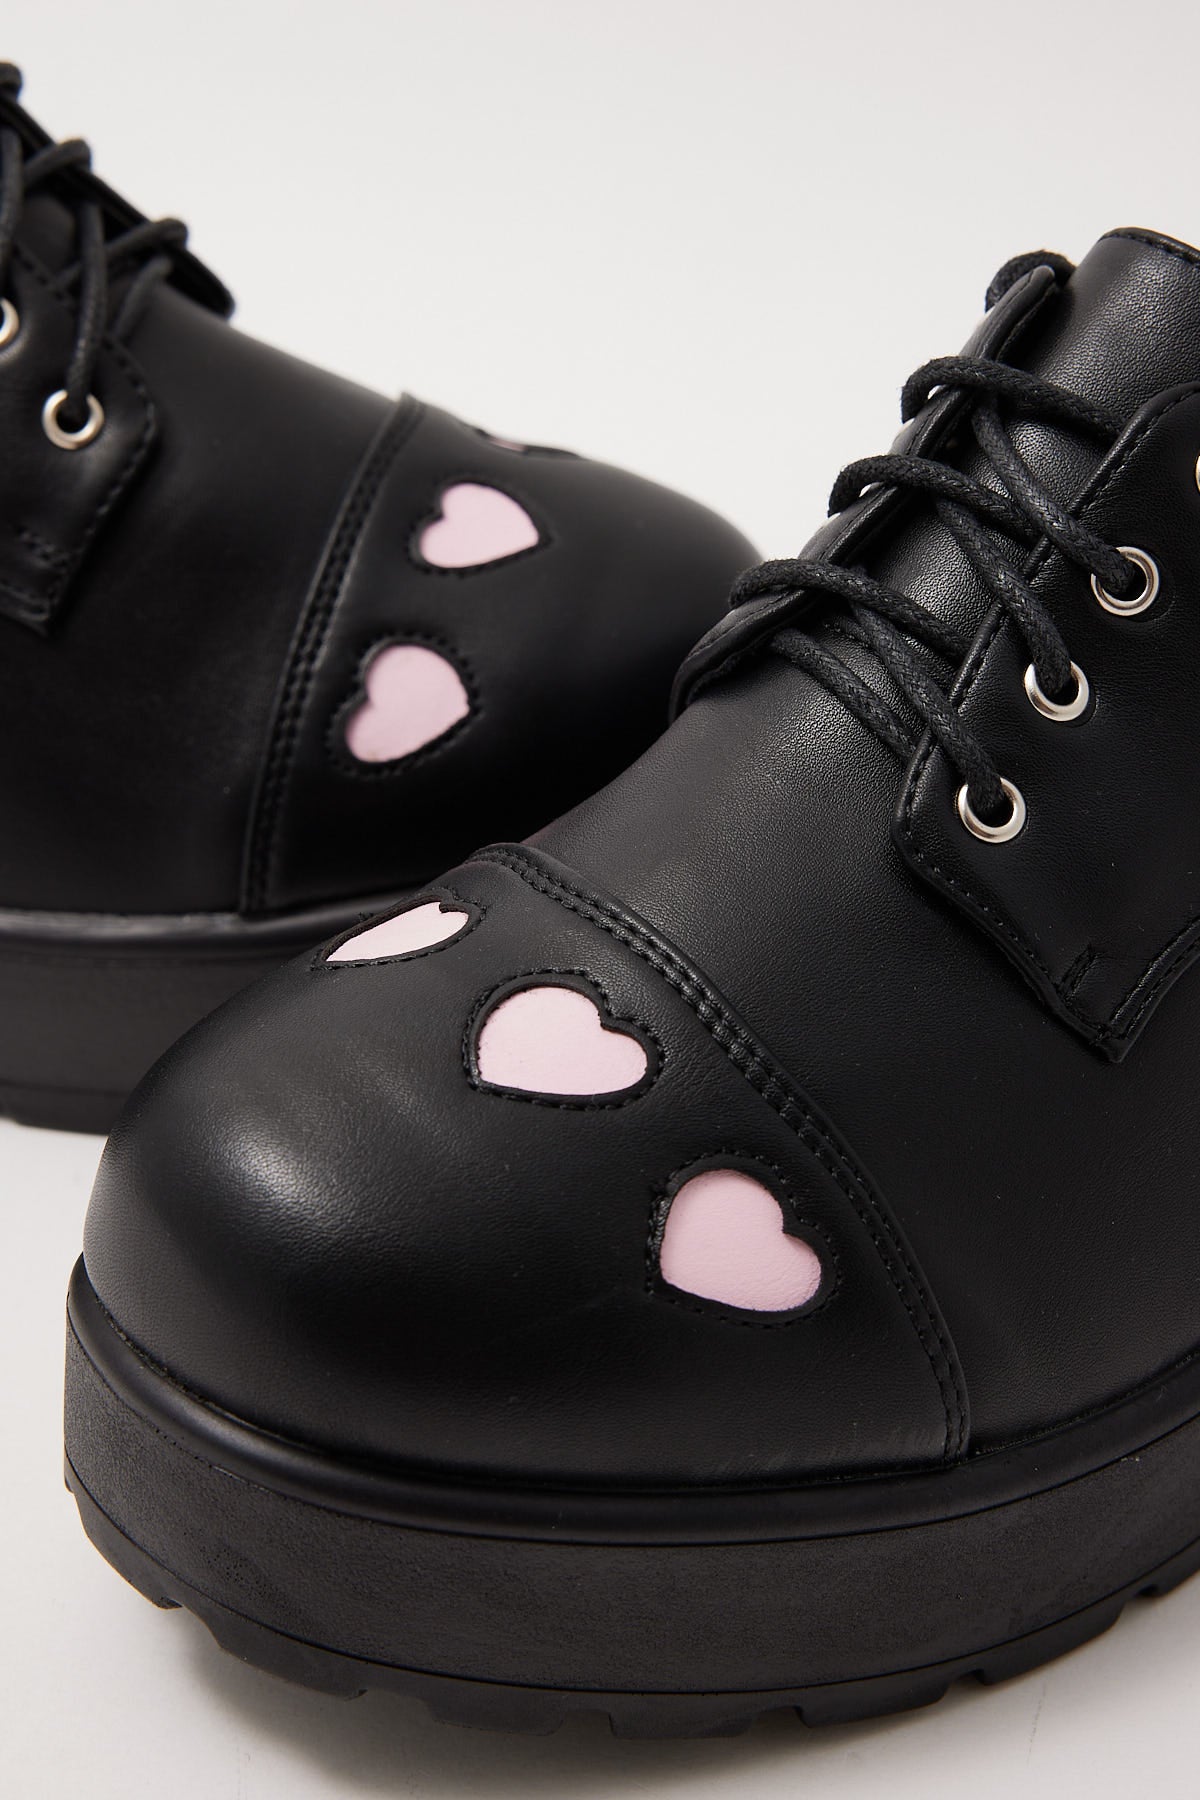 Koi Footwear Tennin Heart Shoes Black